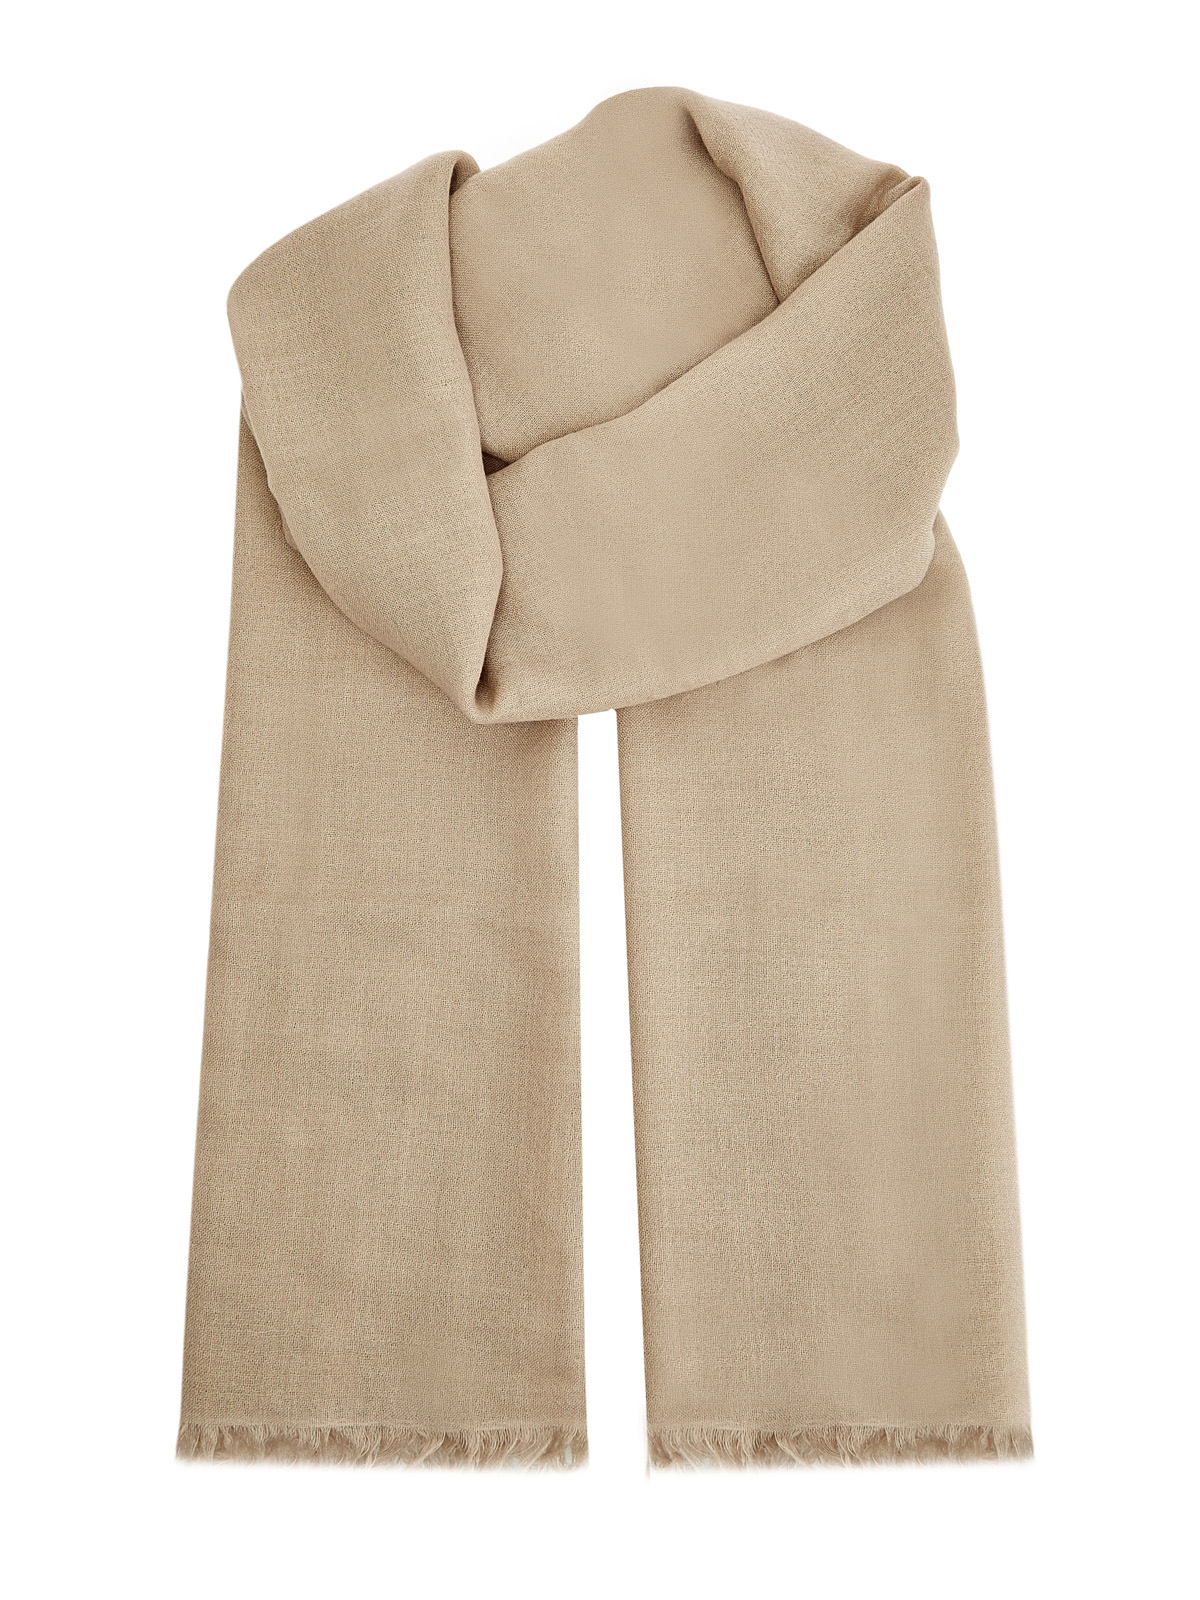 Однотонный шарф ручной работы из кашемира и шелка Diamante BRUNELLO CUCINELLI, цвет бежевый, размер M;L